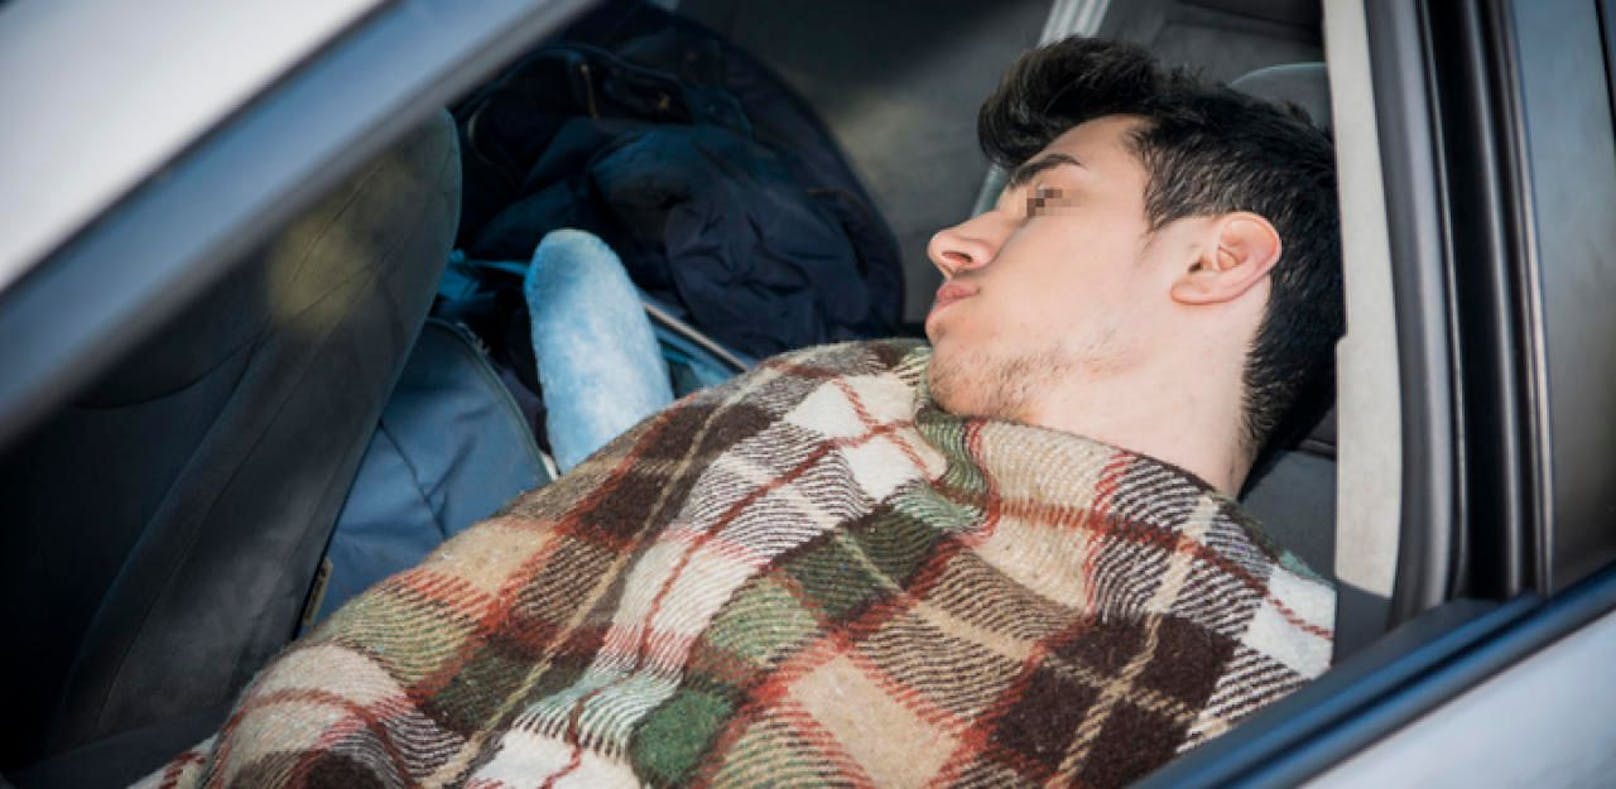 Einem 23-jährigen Dieb überfiel nach getaner Tat die Müdigkeit. Er legte sich neben seiner Beute im Auto einer 74-Jährigen schlafen. (Symbolbild). 